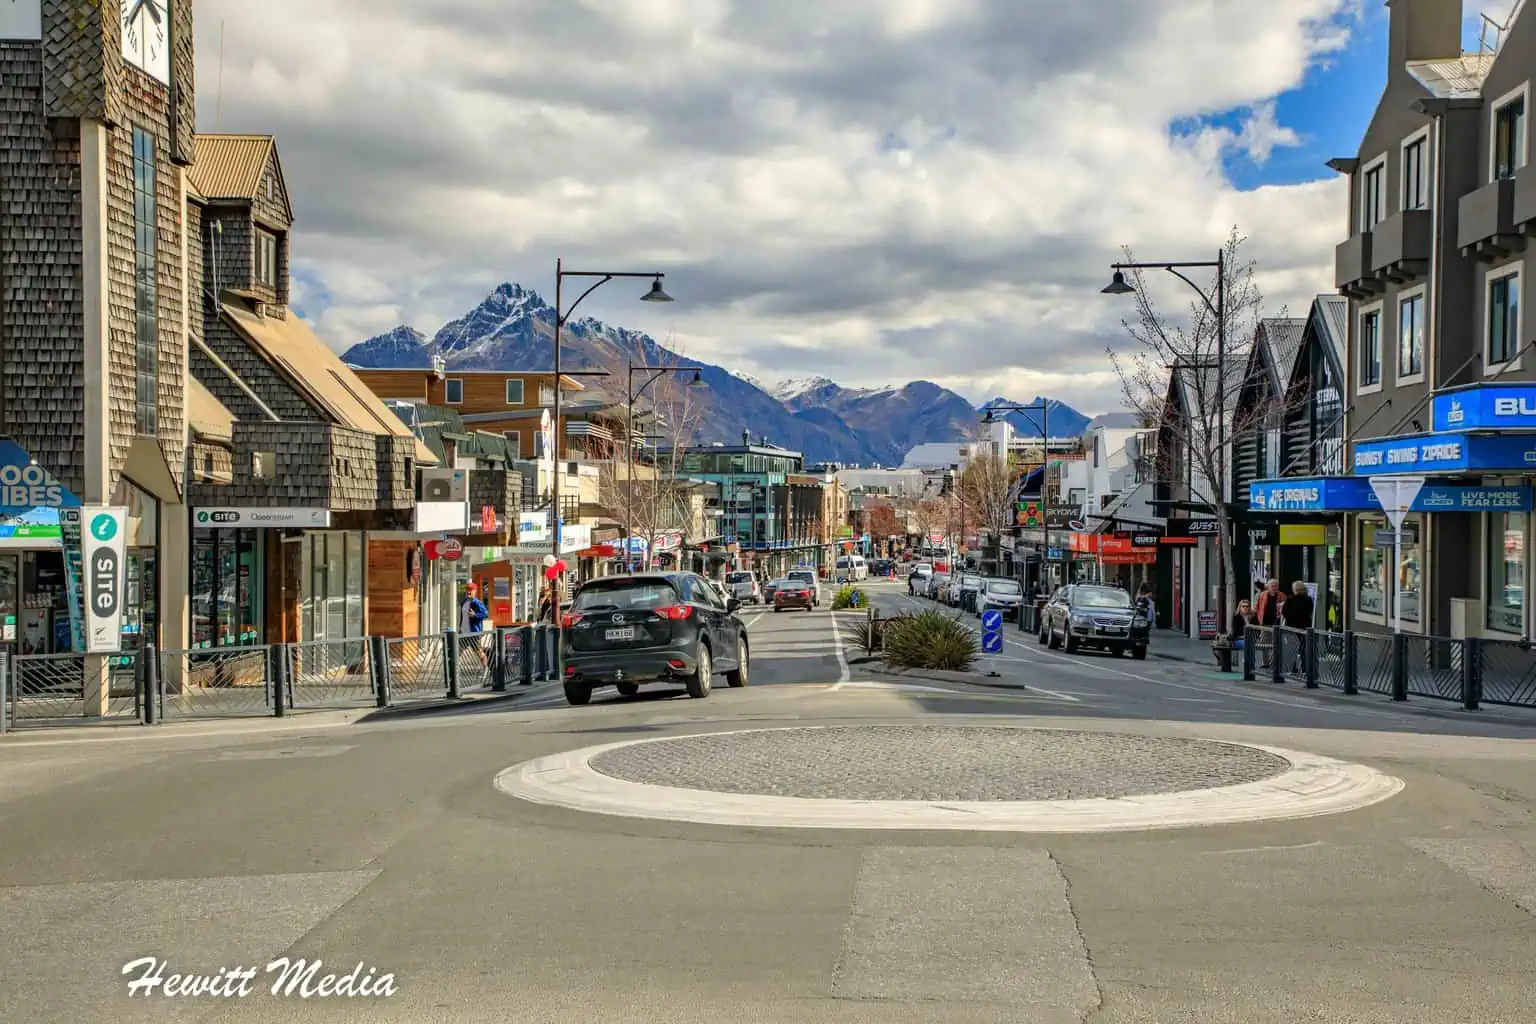 Instagram Travel Photography - Queenstown, New Zealand